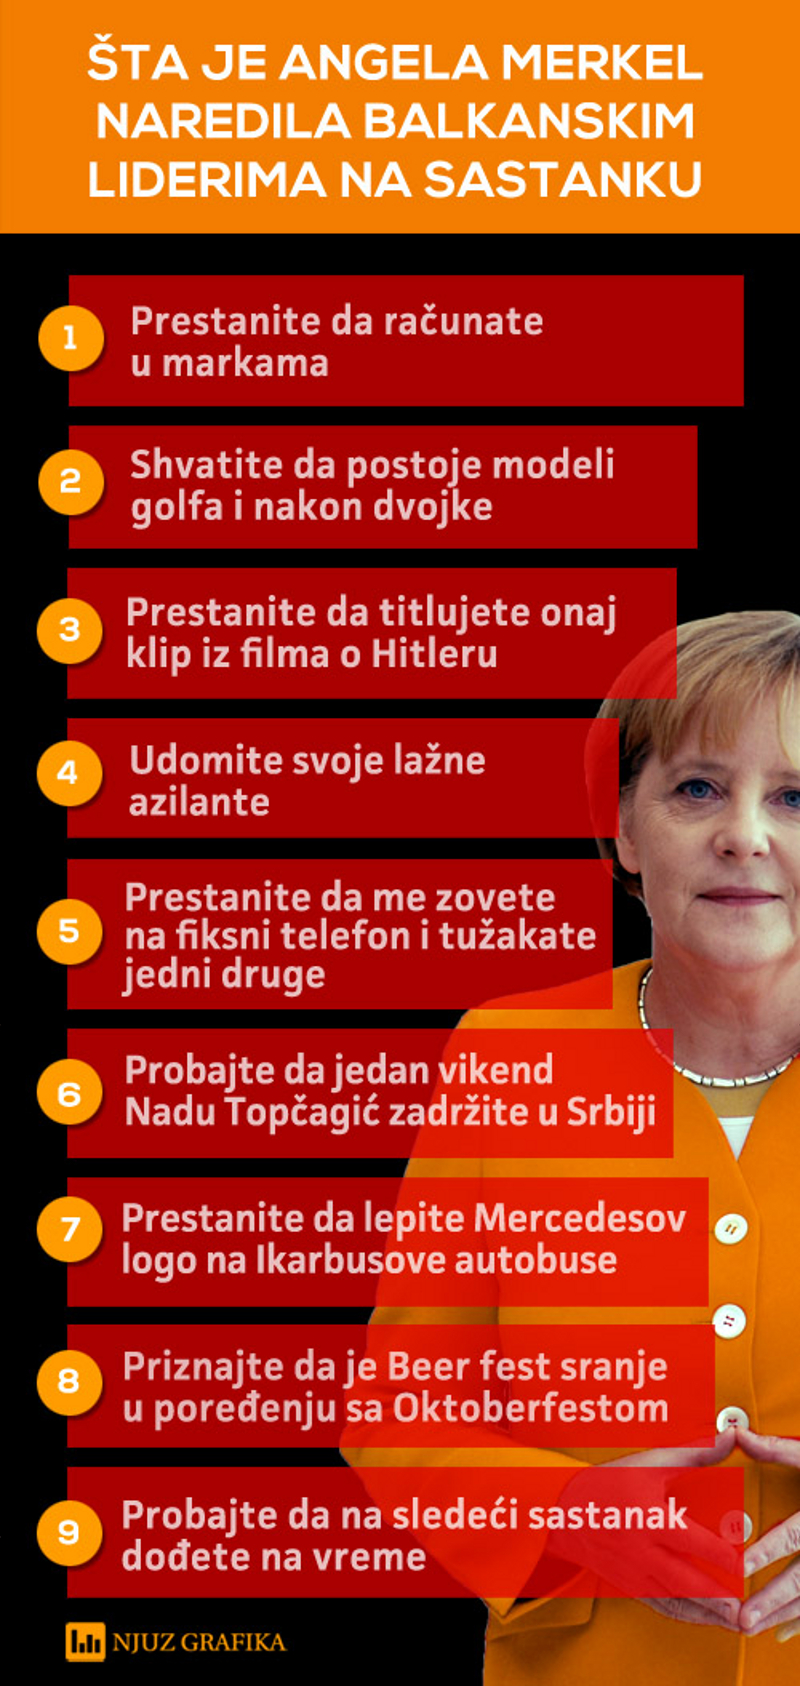 Шта је Ангела Меркел наредила балканским лелемудима на састанку